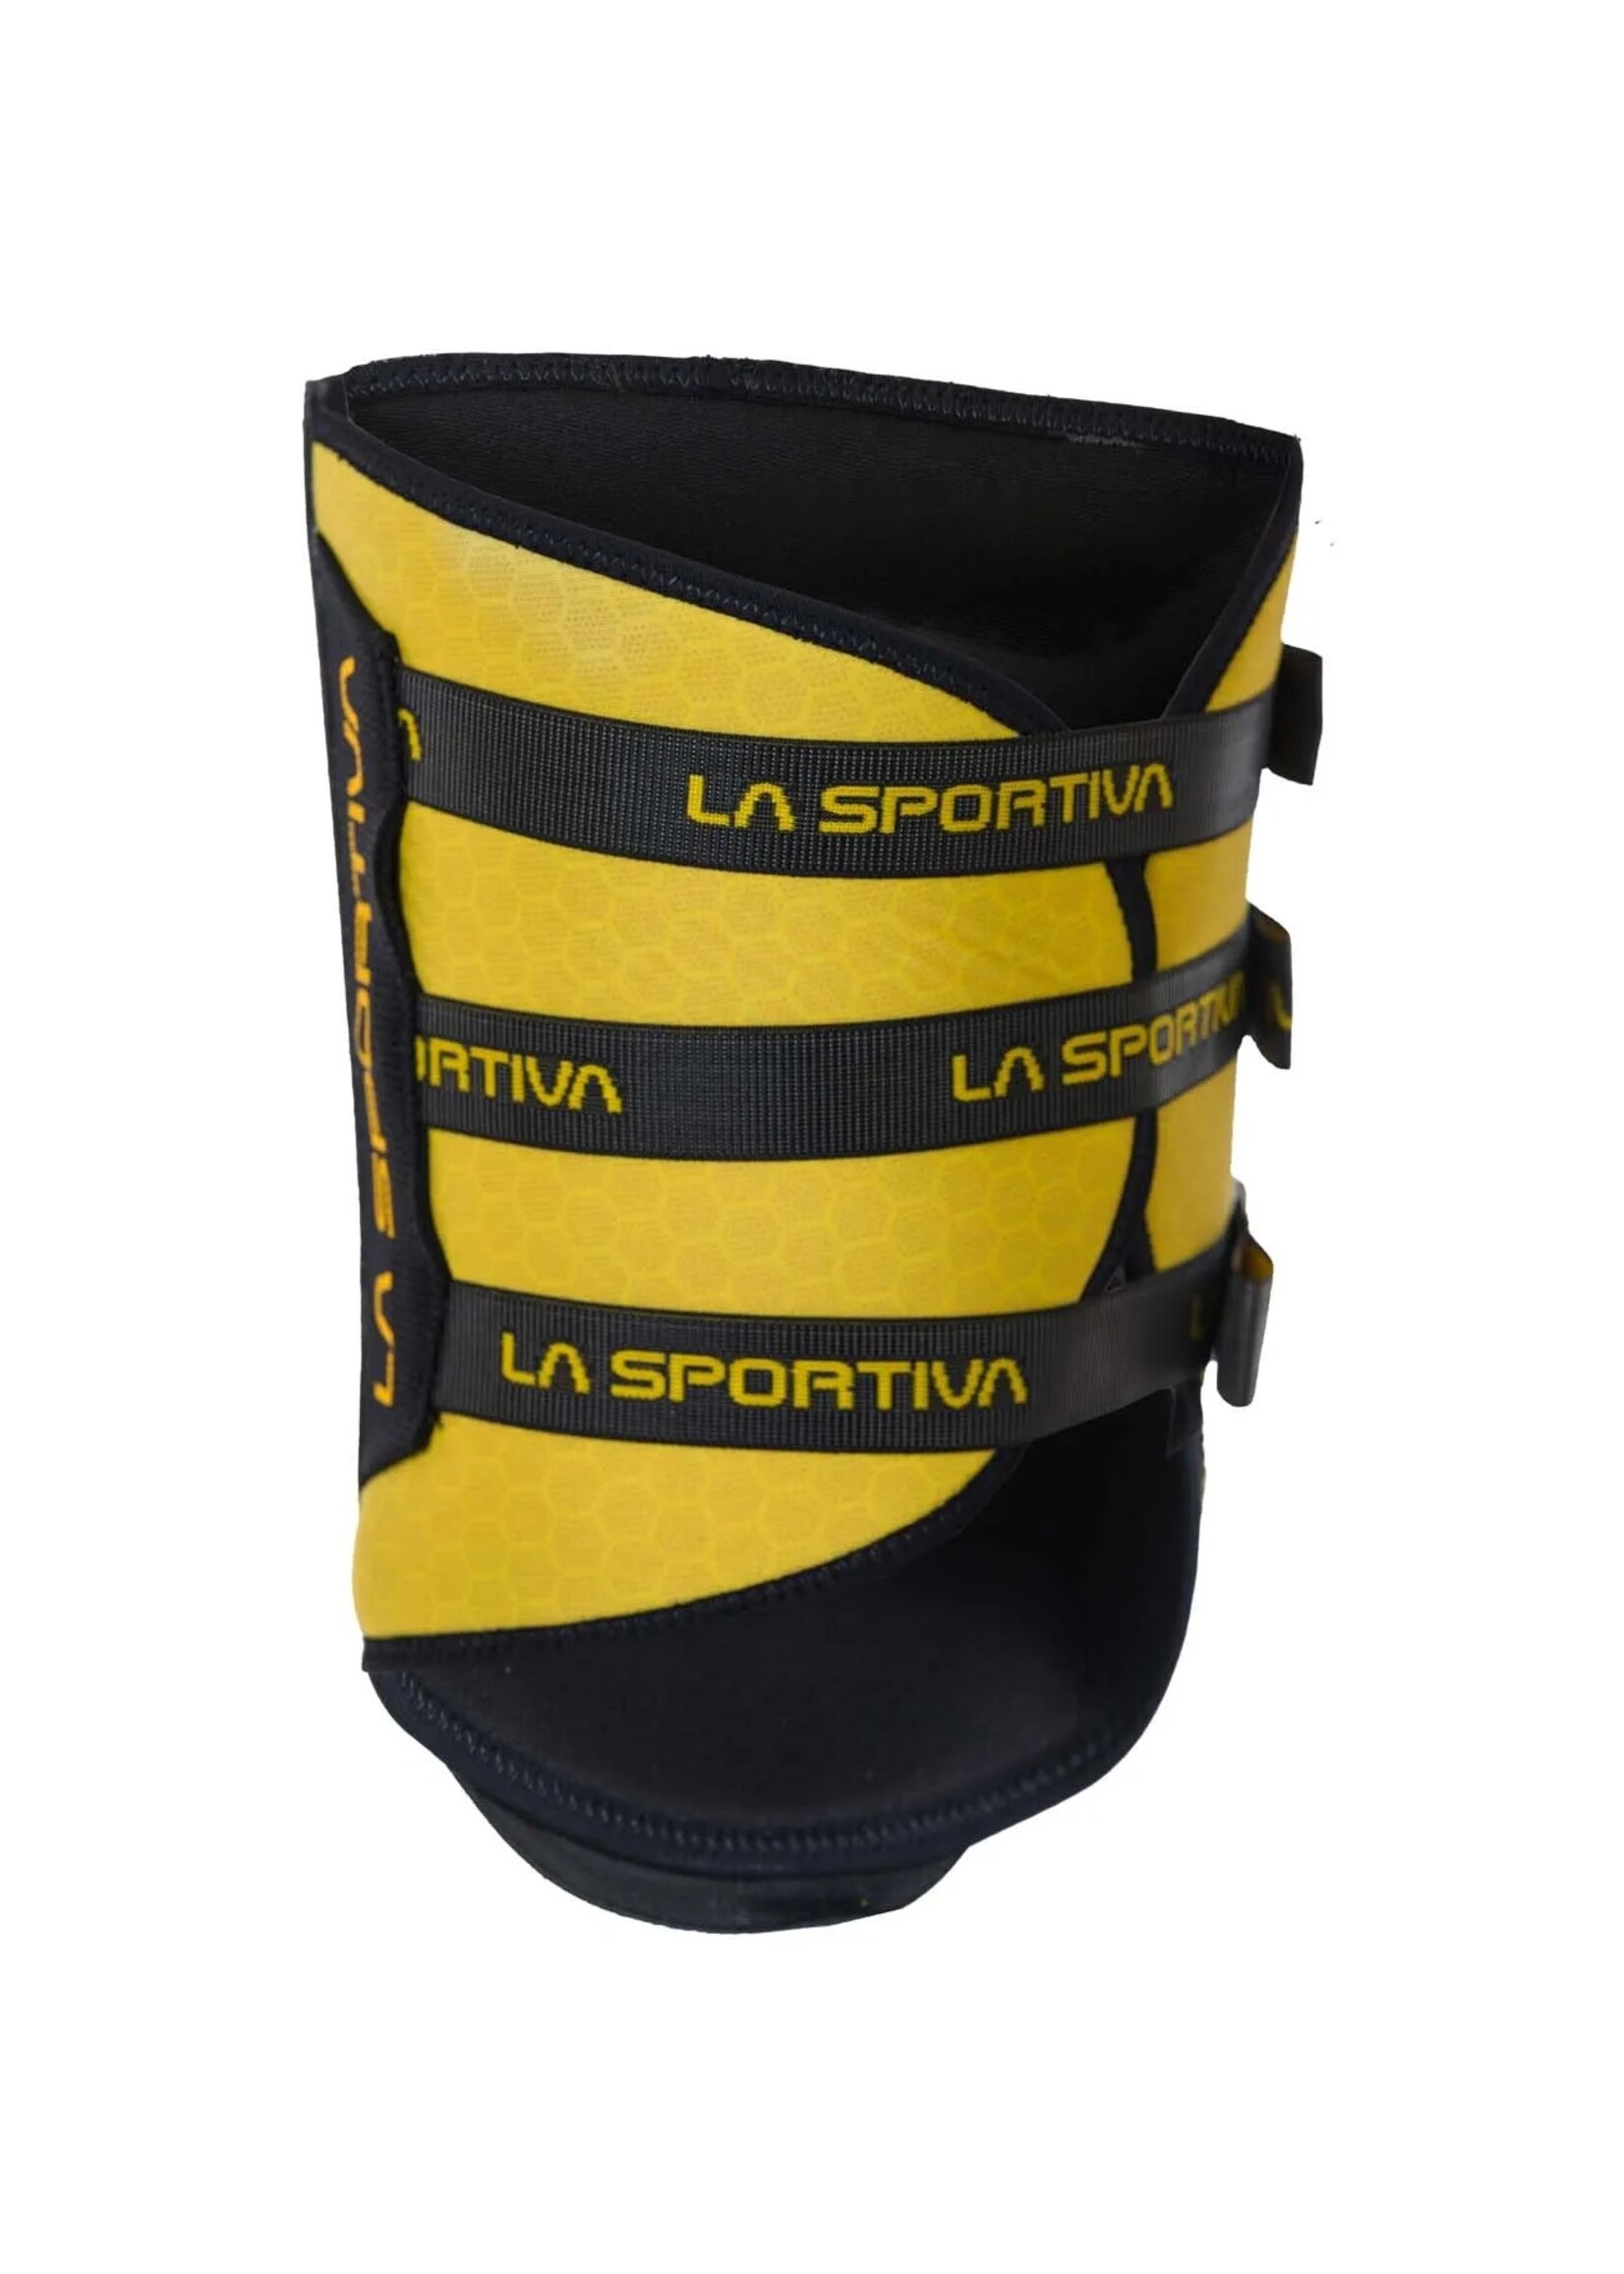 La Sportiva La Sportiva LaSpo Knee Pad